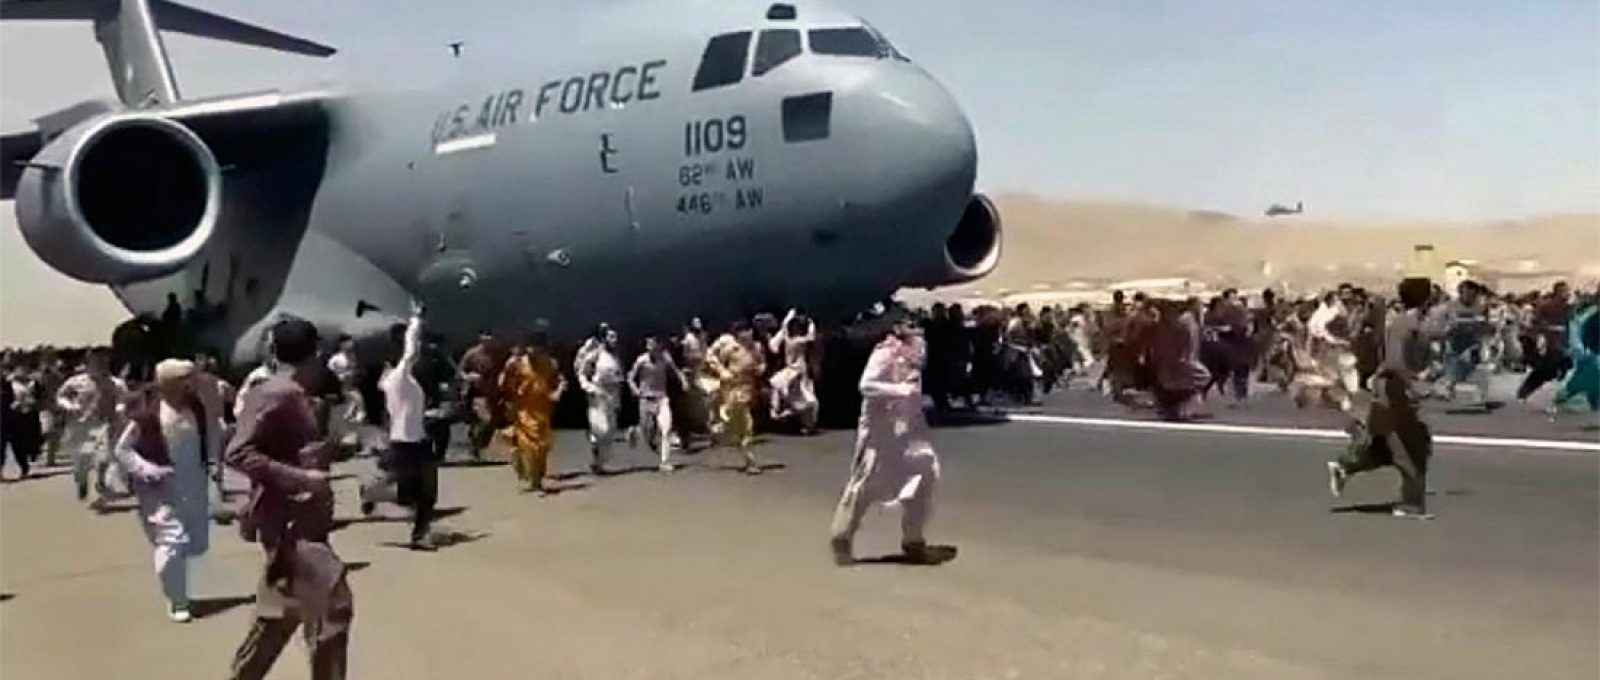 Centenas de pessoas correm ao lado de uma aeronave de transporte C-17 da USAF enquanto ele taxia pela pista do aeroporto de Cabul, Afeganistão, em 16 de agosto de 2021 (Foto: Politico/UGC via AP).